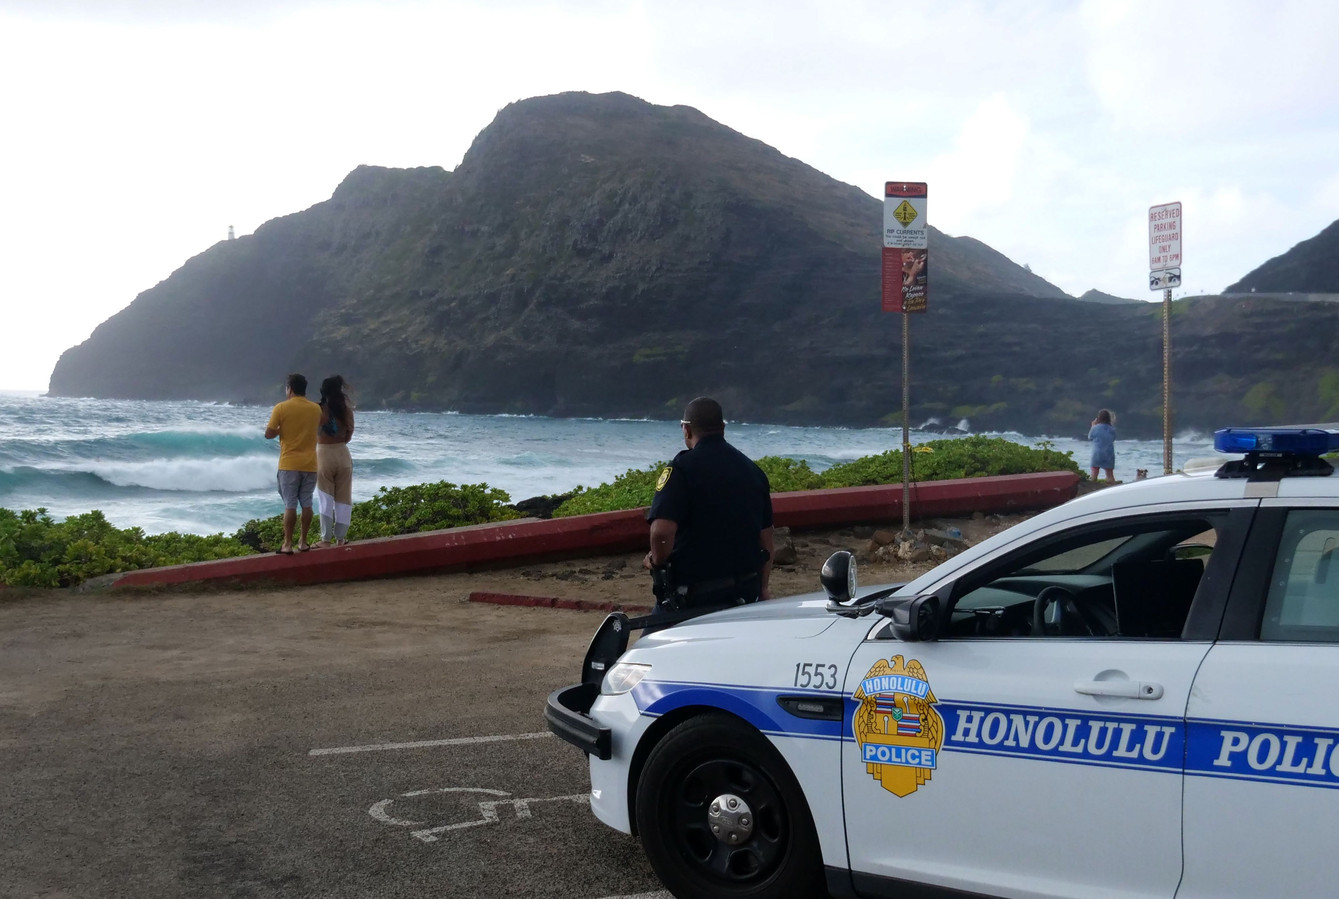 De politie in Honolulu sluit de parkeerplaats uit voorzorg voor de naderende orkaan.